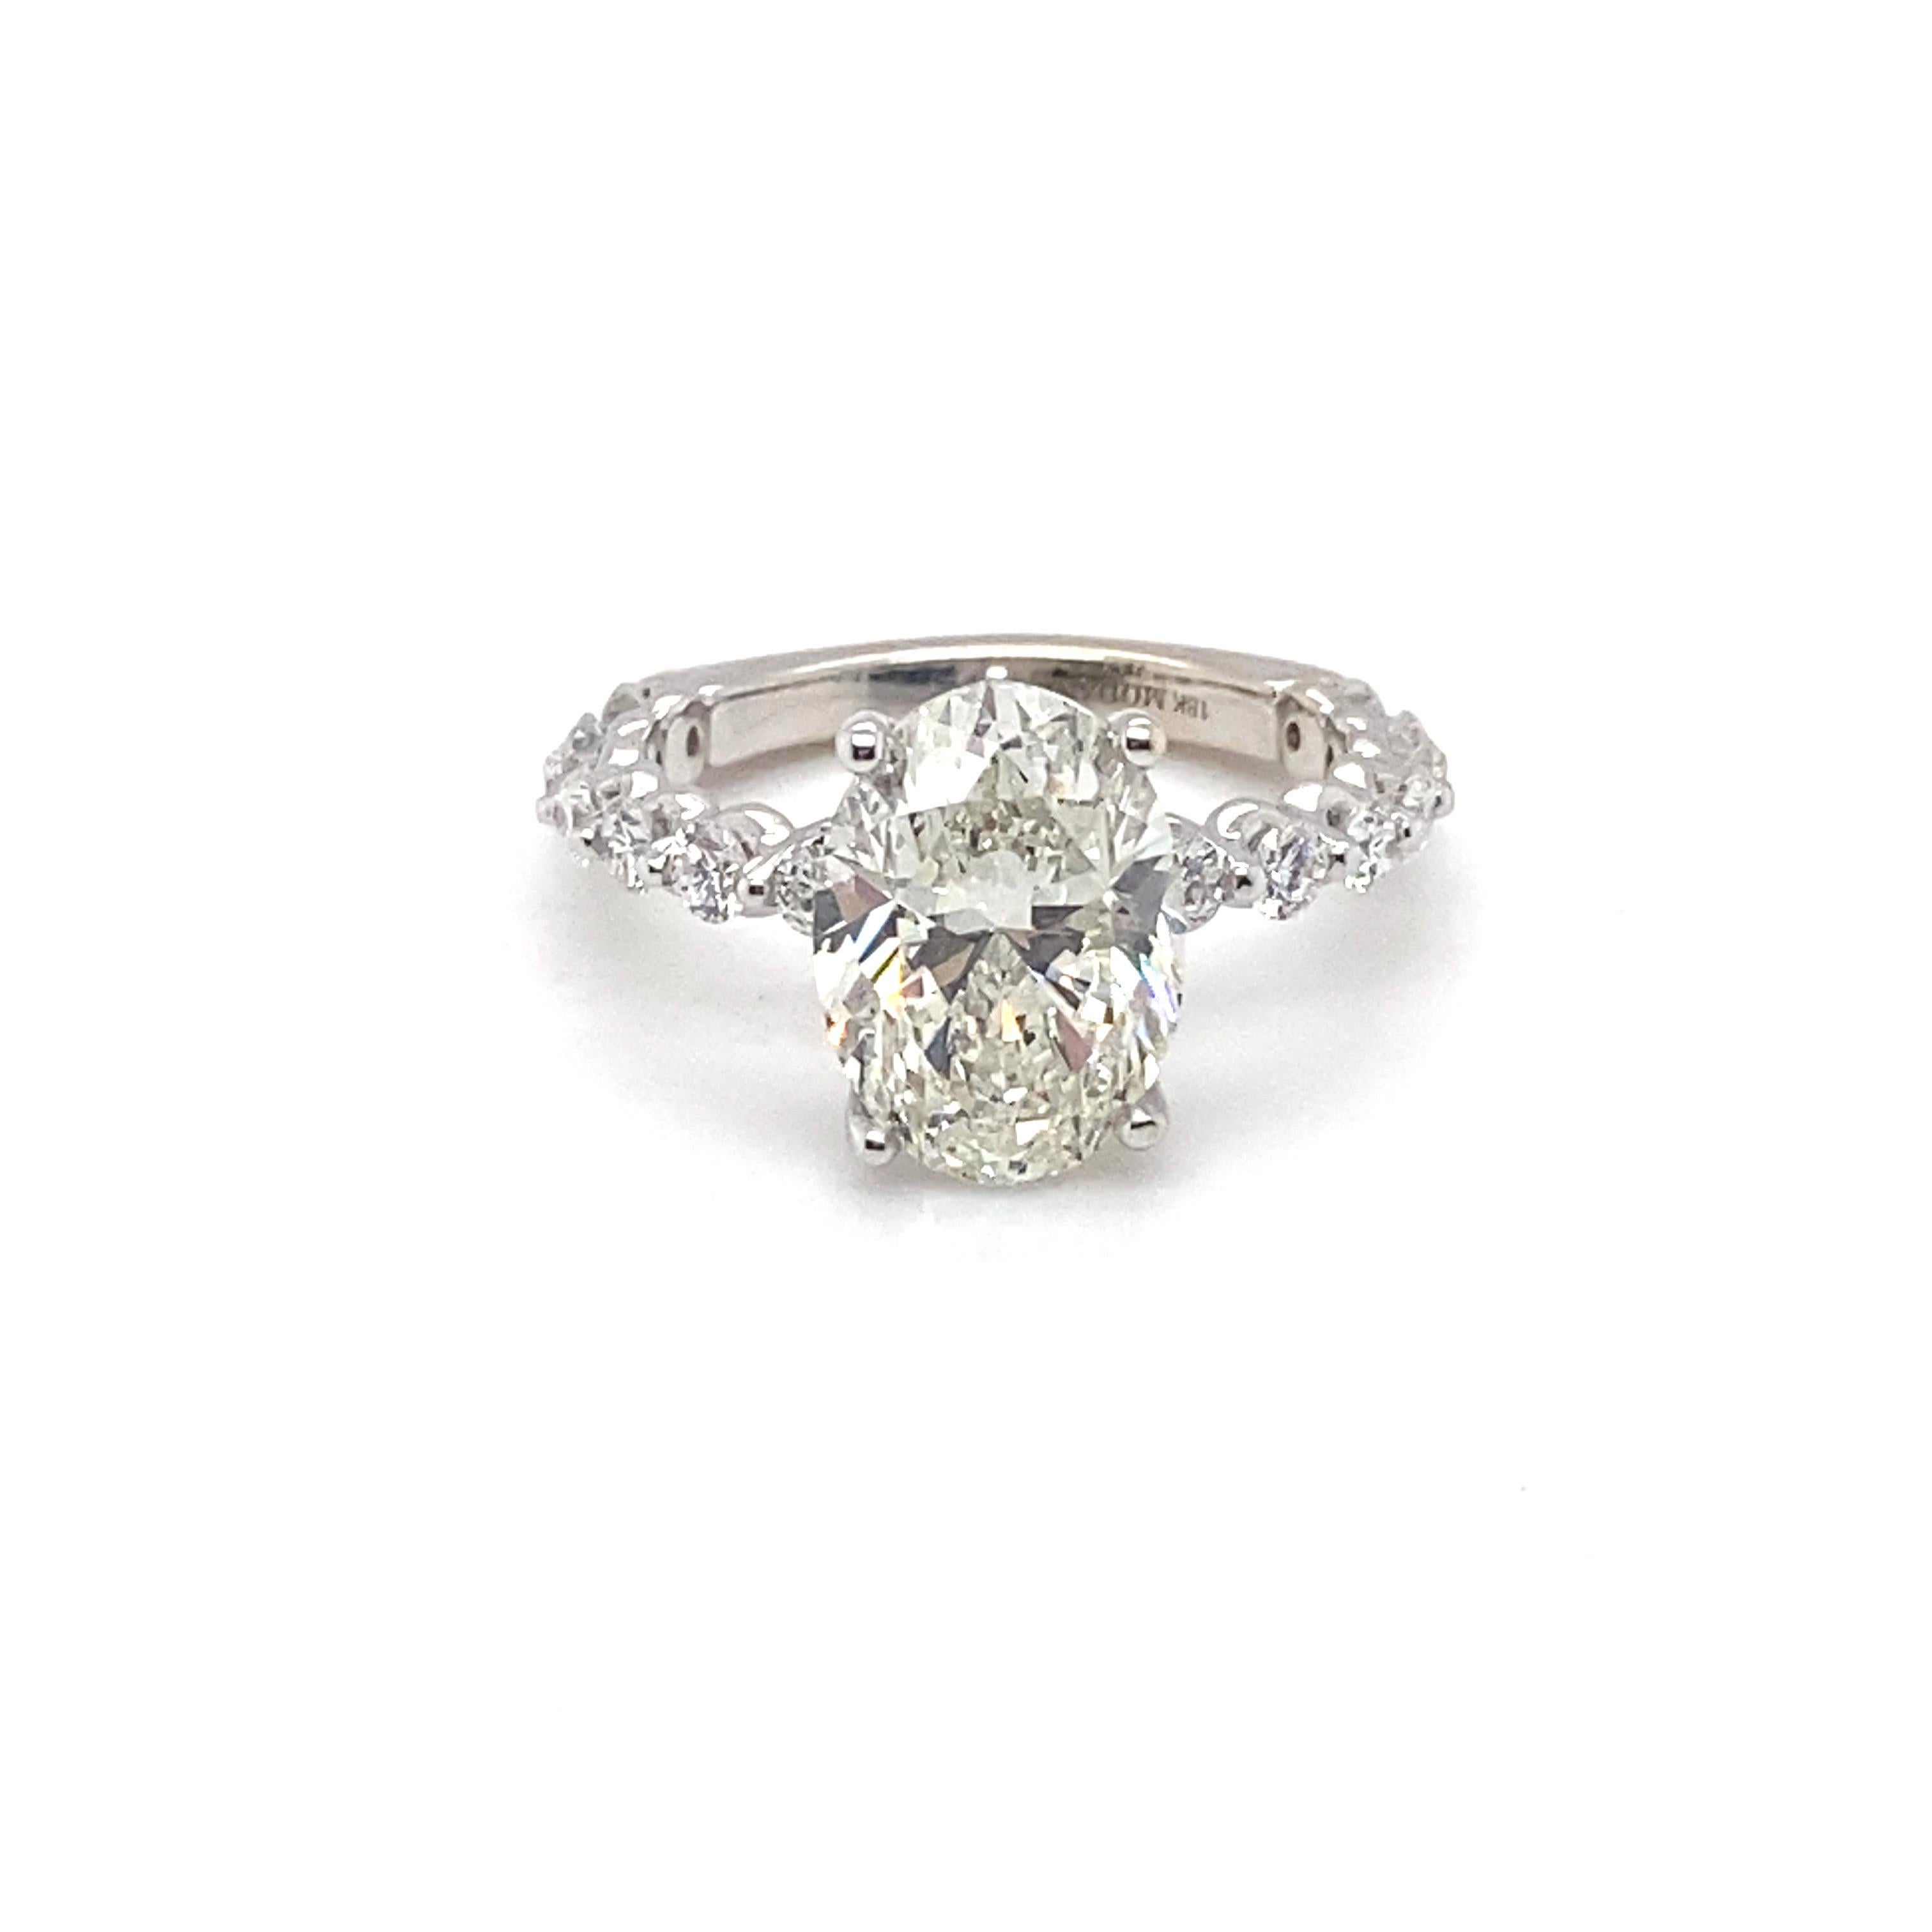 Cette magnifique bague est ornée d'un diamant ovale de 4,03 carats certifié par la GIA, serti sur des griffes, et de diamants d'accentuation sur la bande. Chaque détail a été pris en compte et affiné pour répondre à vos attentes et constituer un